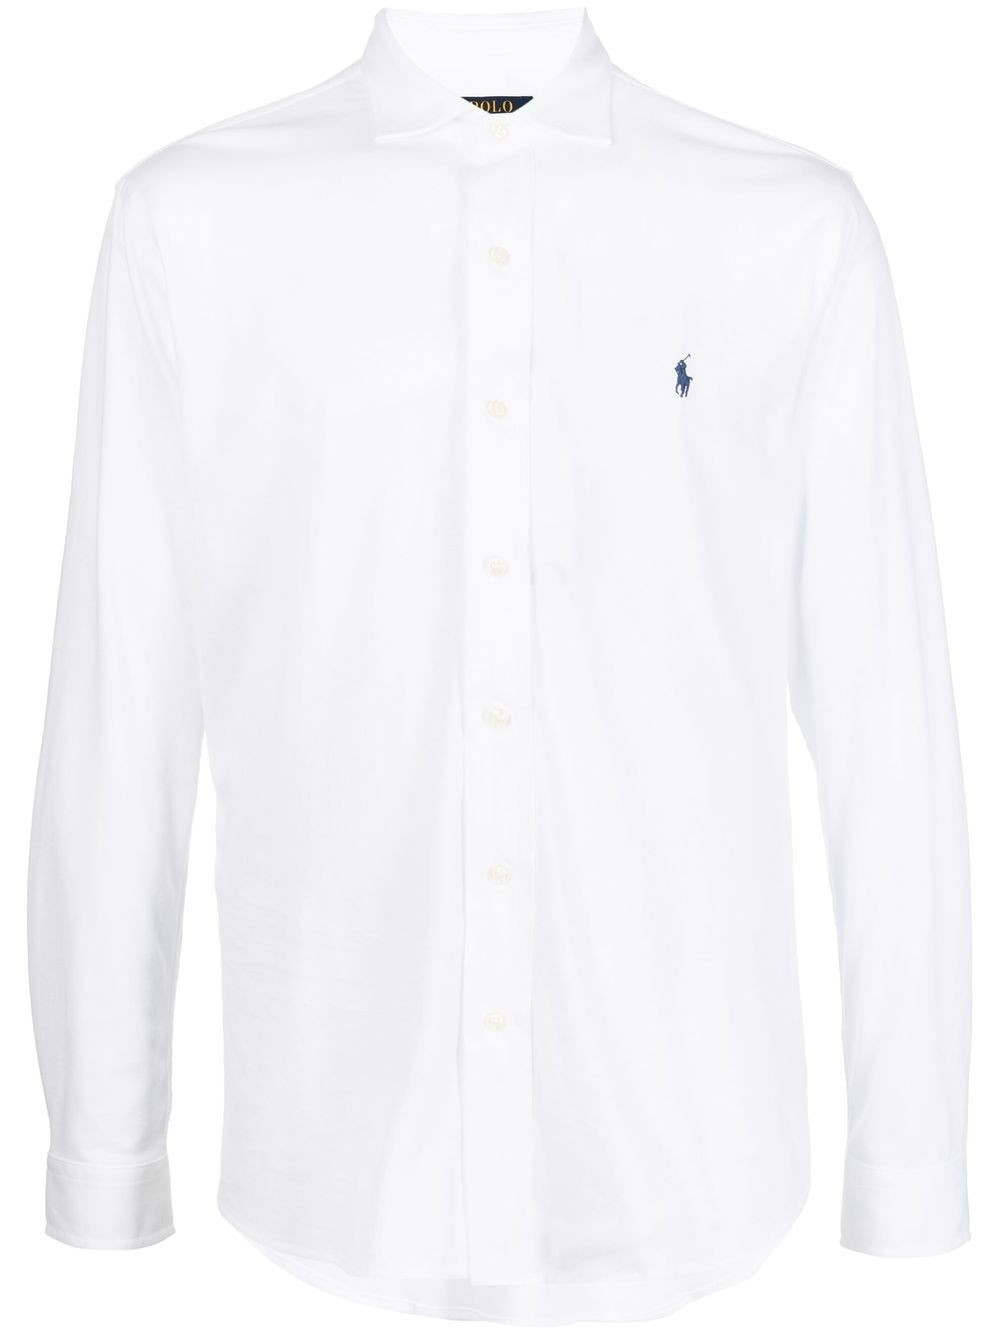 perfil Comerciante itinerante Falsificación Polo RALPH LAUREN - Camisa Blanca Logo en Parte Superior Izquierda Hombre -  710867107001/WHITE - Guanxe Atlantic Marketplace